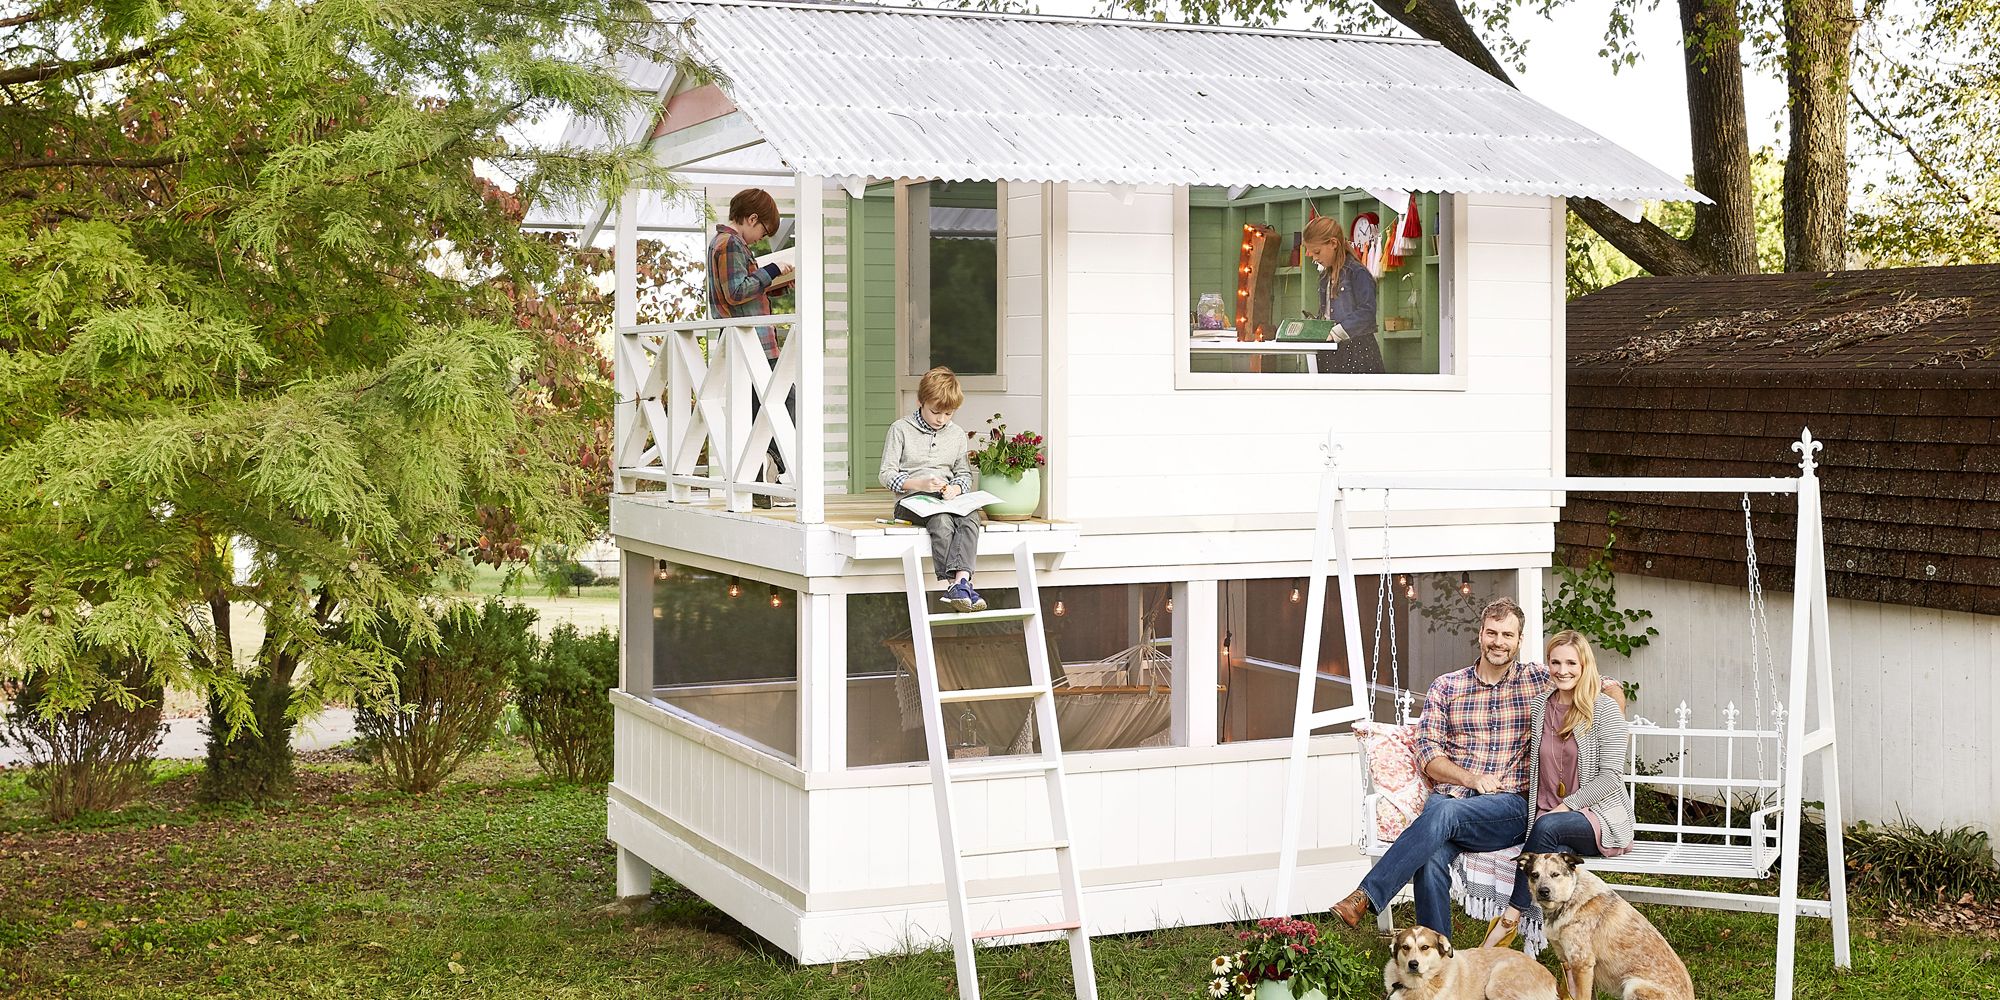 DIY Backyard Treehouse Ideas - The Handmade Home Playhouse Photos